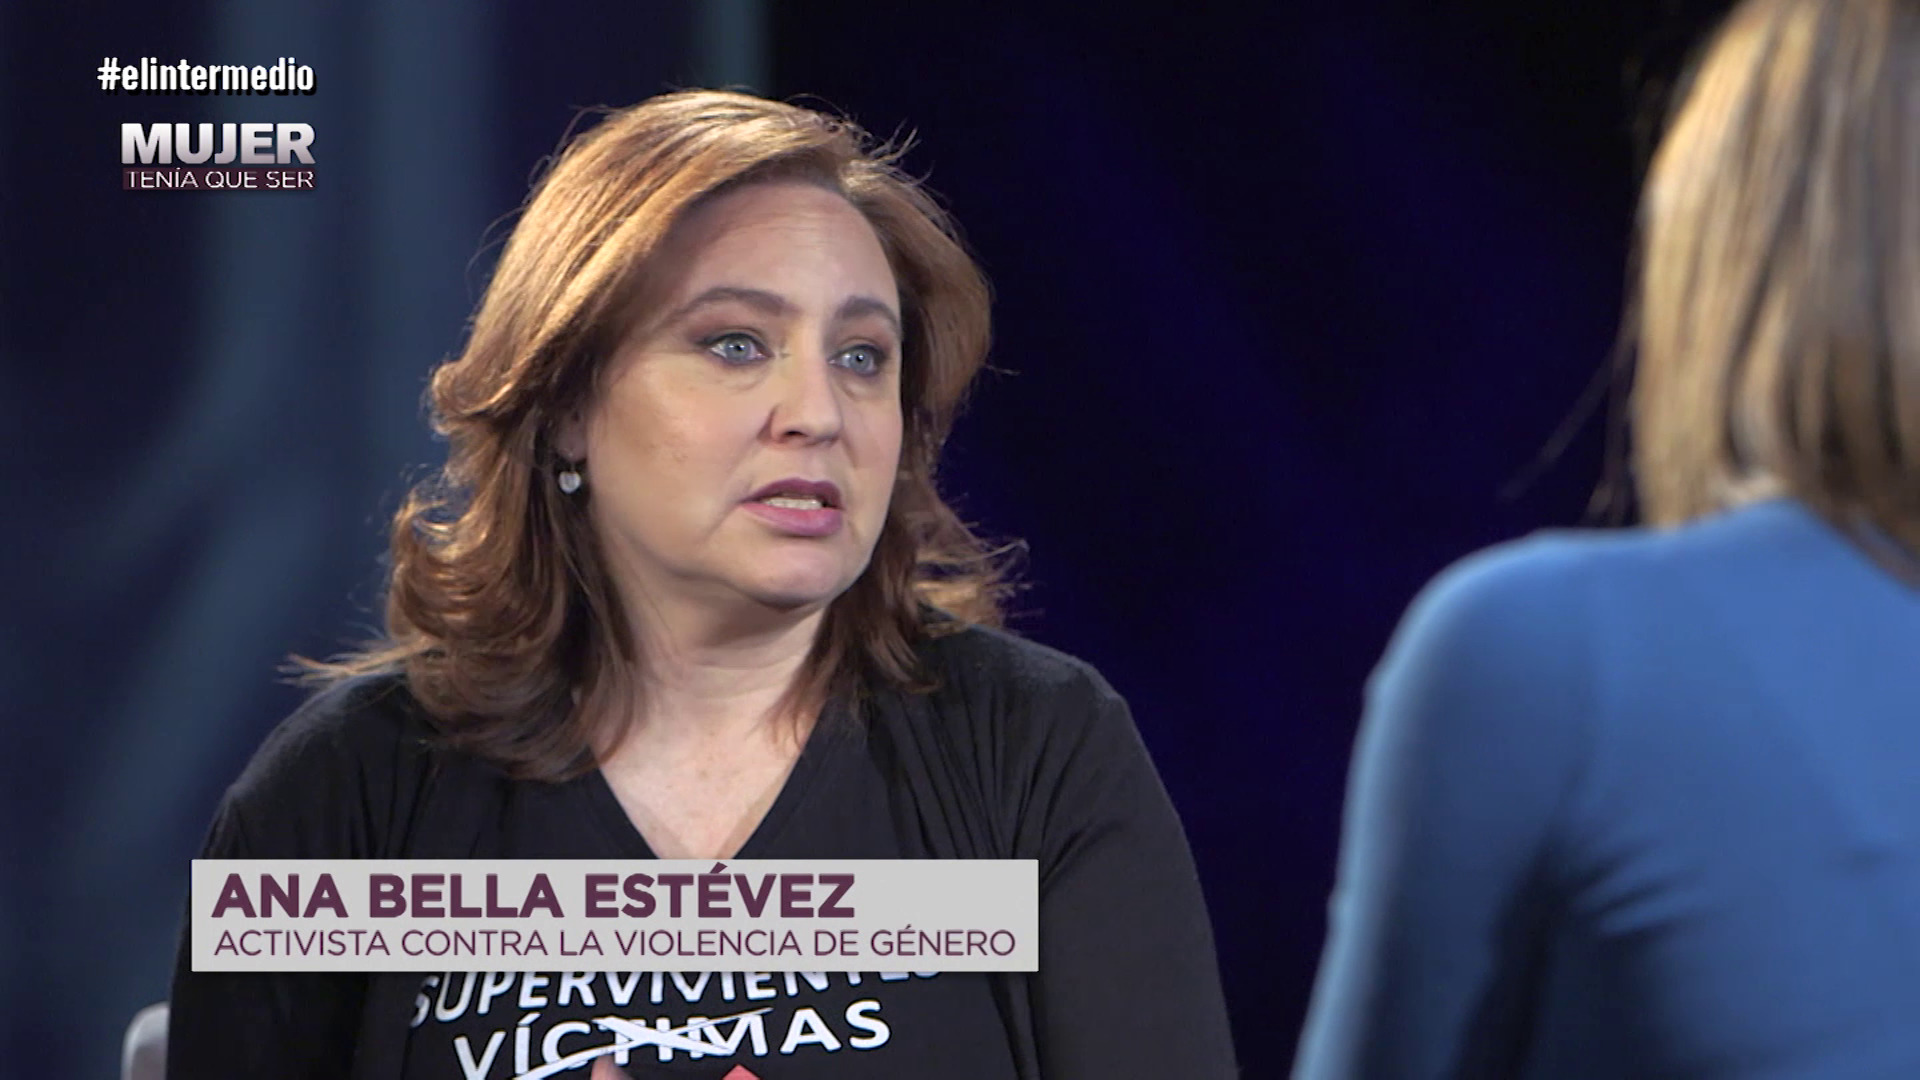 Temporada 1 (13-08-18) Así contó Ana Bella Estévez su dura historia en El Intermedio: 